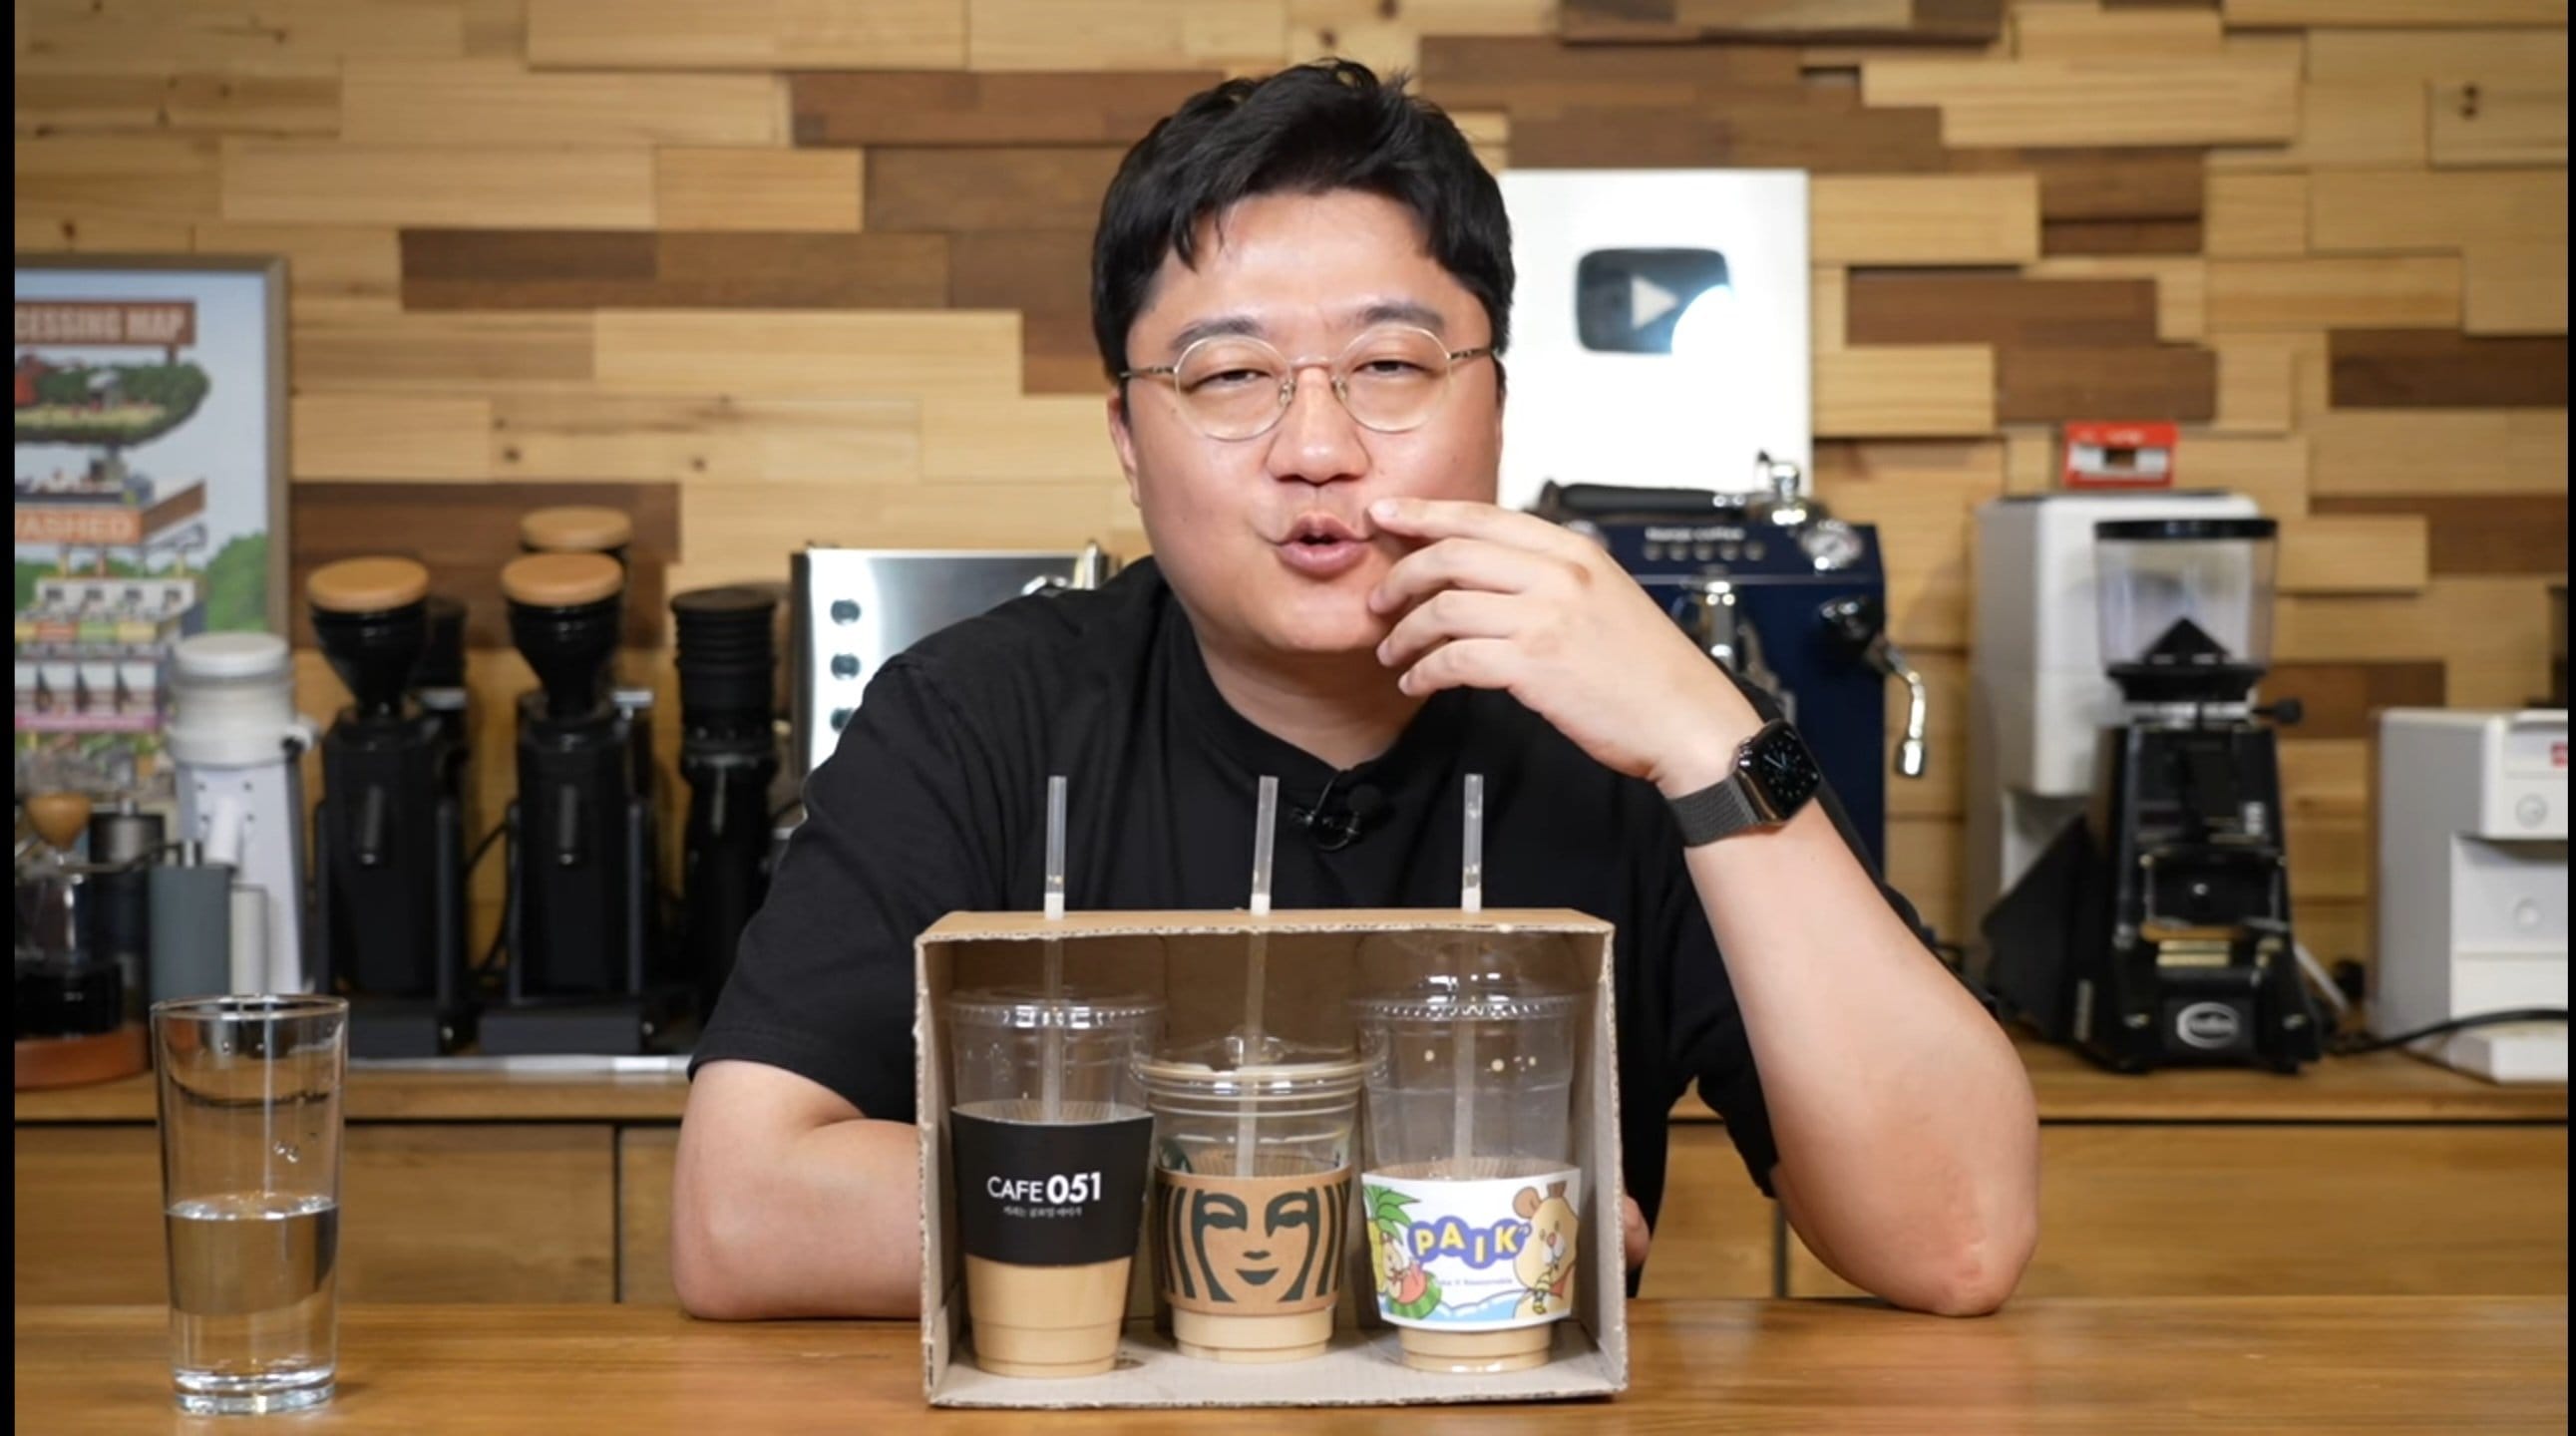 스타벅스 싫어하는 커피유튜버의 라떼 블라인드테스트